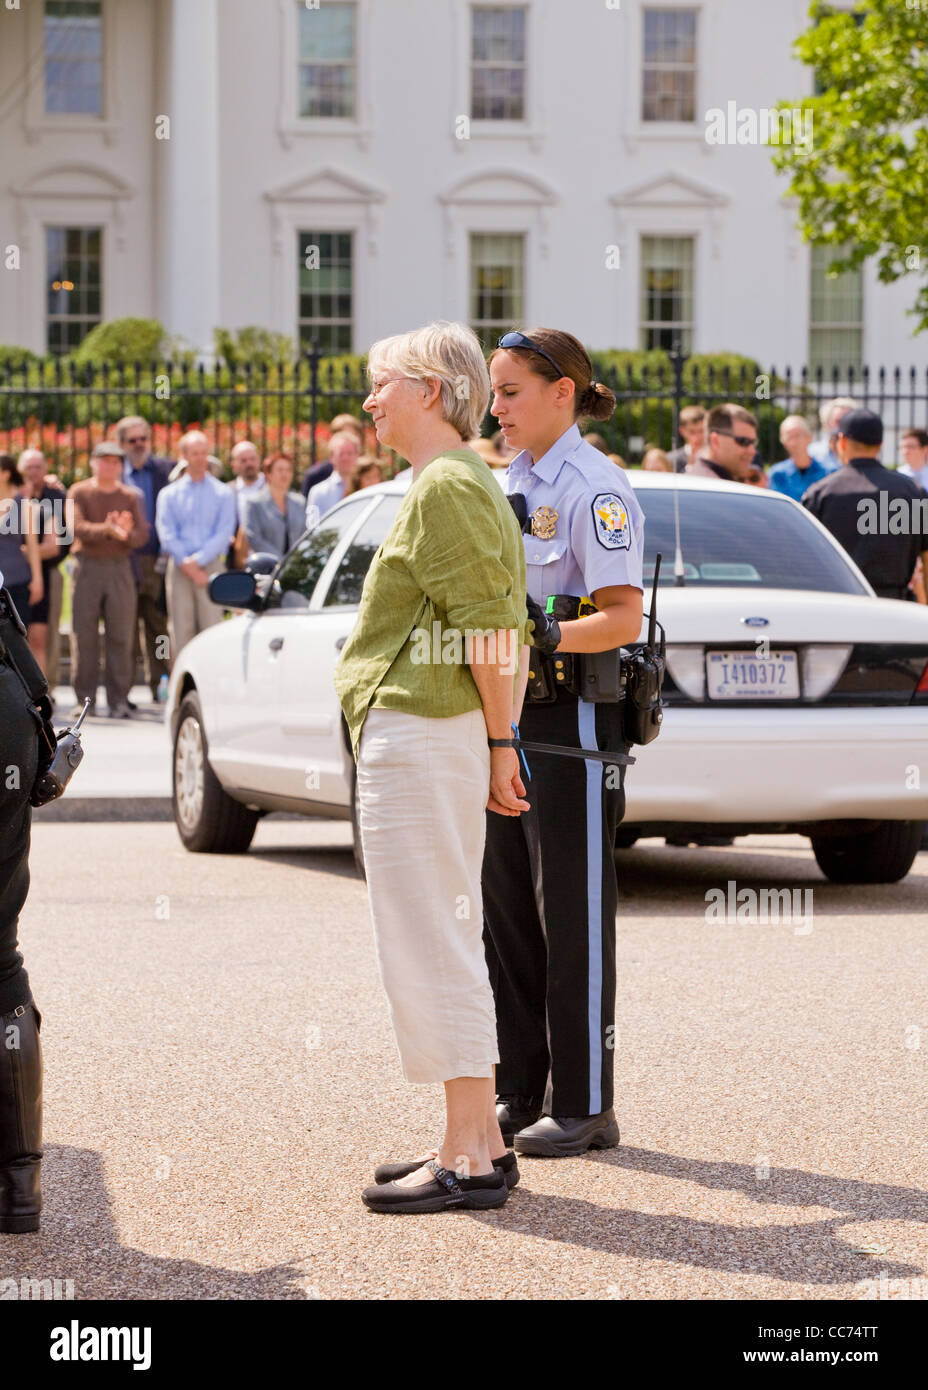 Démonstrateur femelle est menotté et emmené par la police à une manifestation publique - Washington, DC USA Banque D'Images